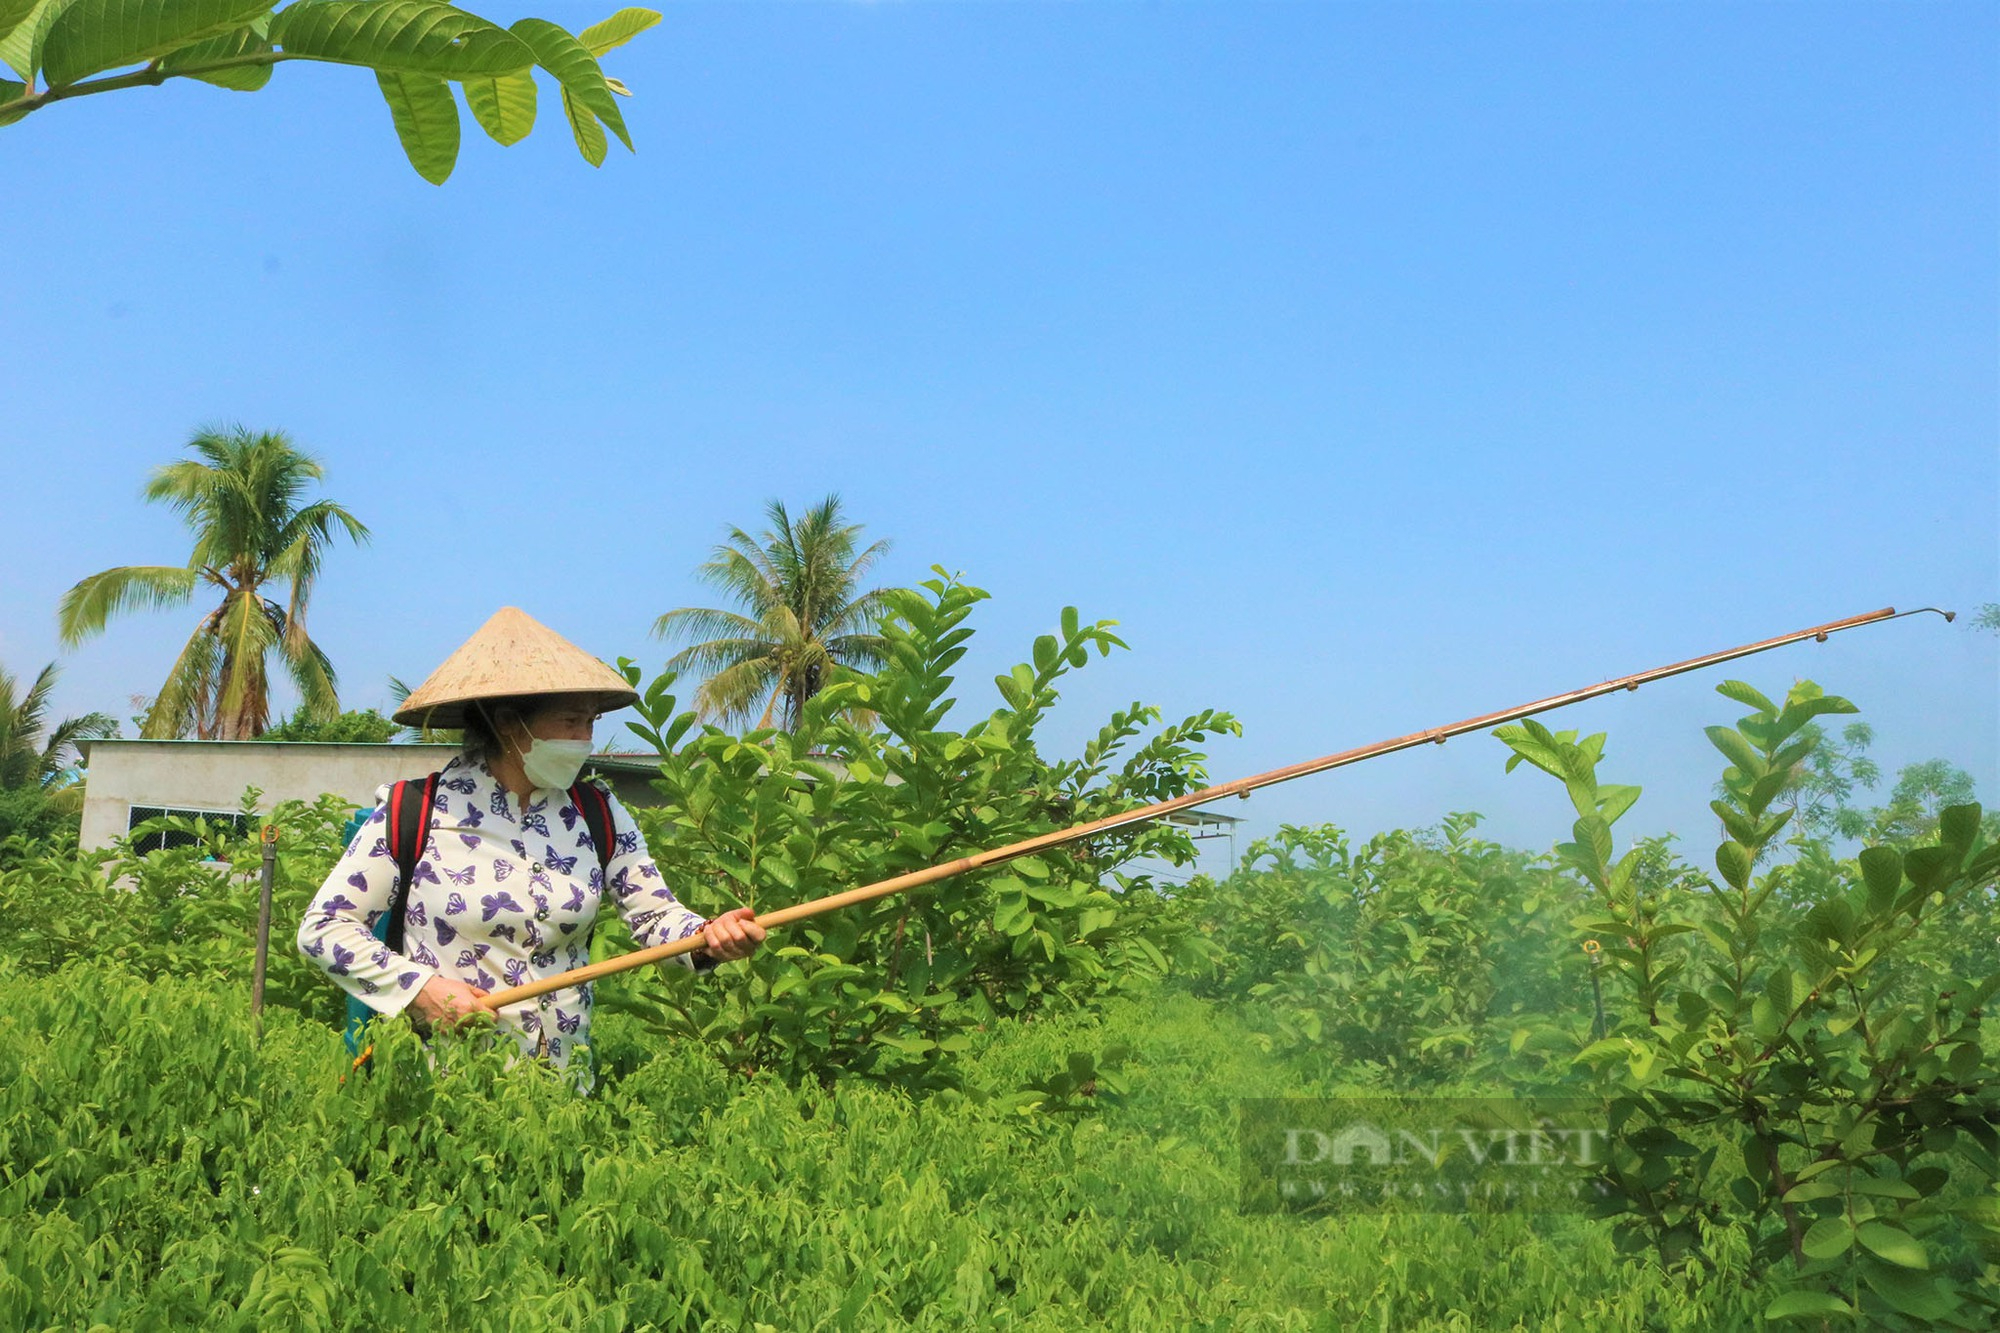 Ủ cá thành phân bón, vườn cây trái của nữ nông dân ở Gia Lai ra sum suê, trĩu mọng - Ảnh 5.